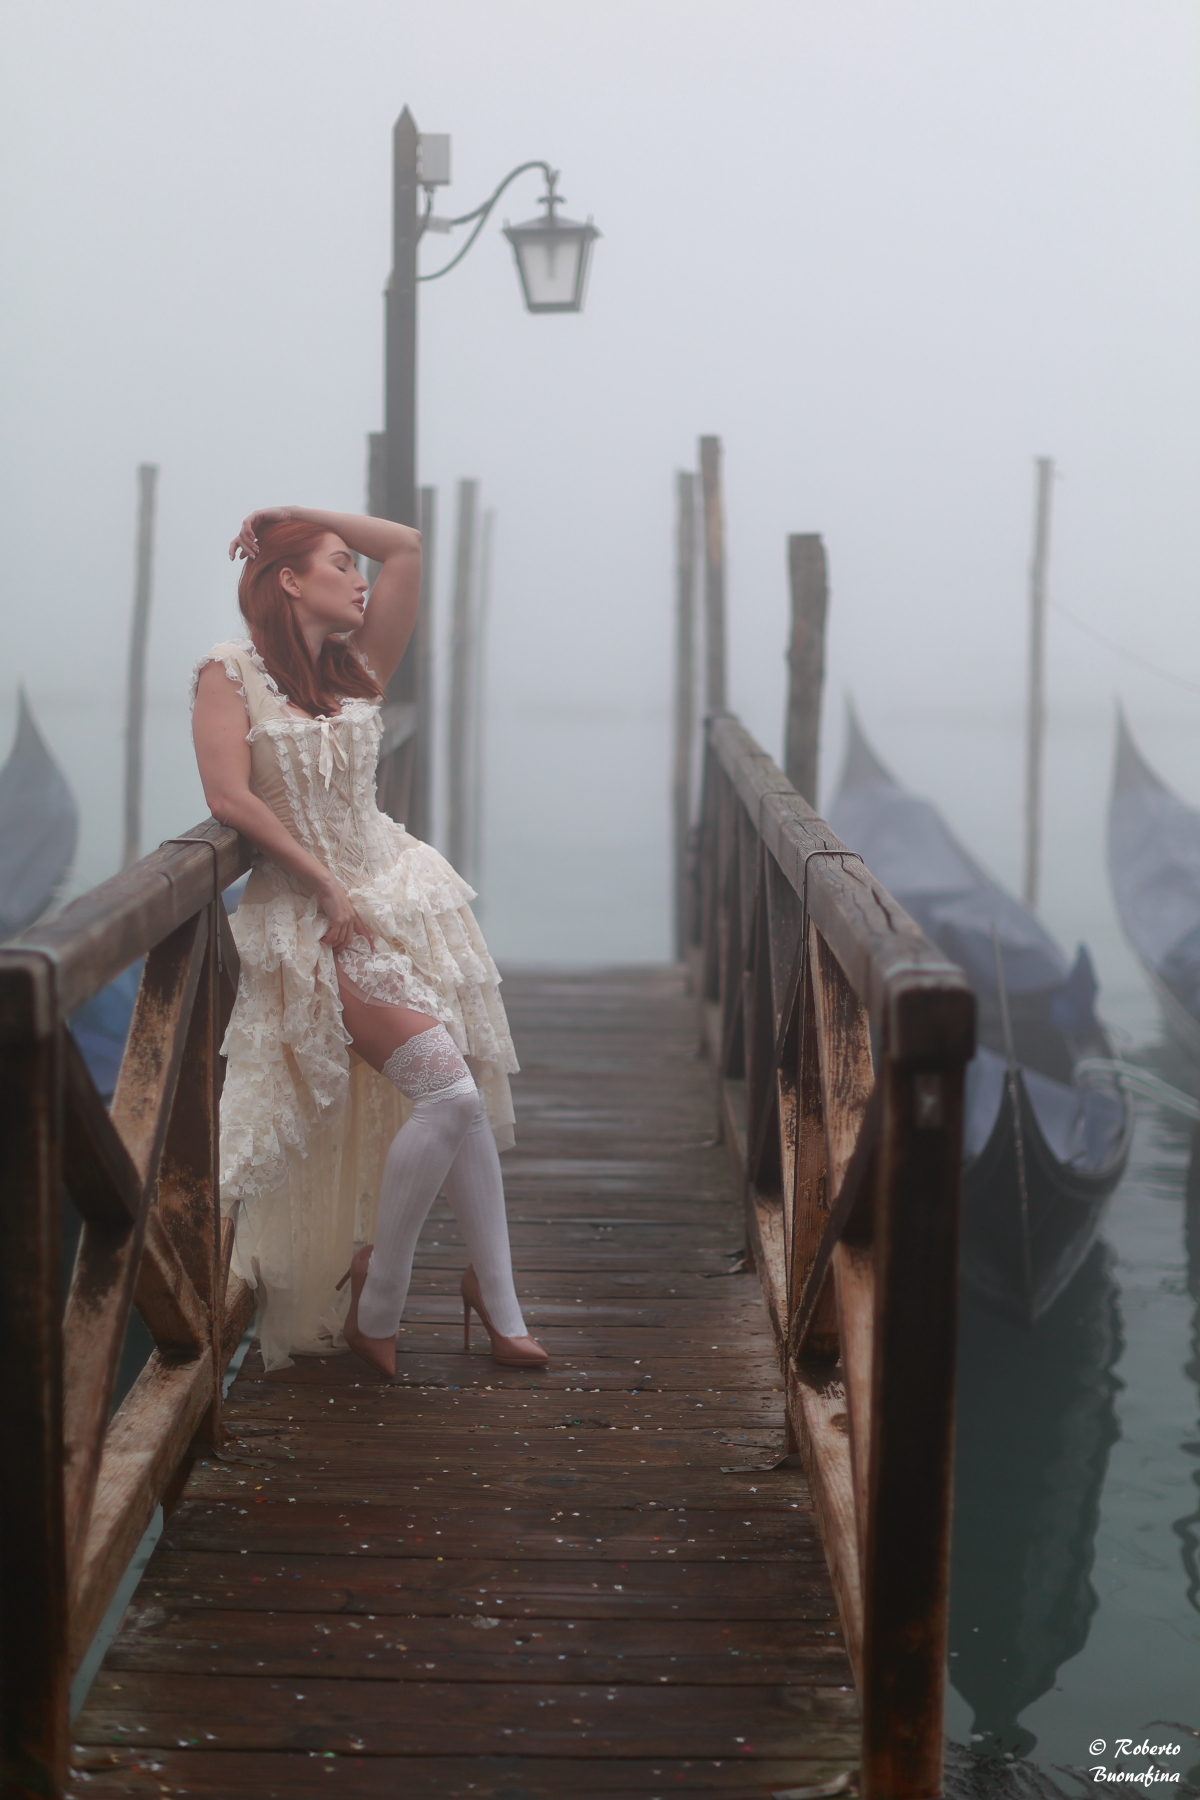 An Angel in the fog- Venice 16 February 2023 ...